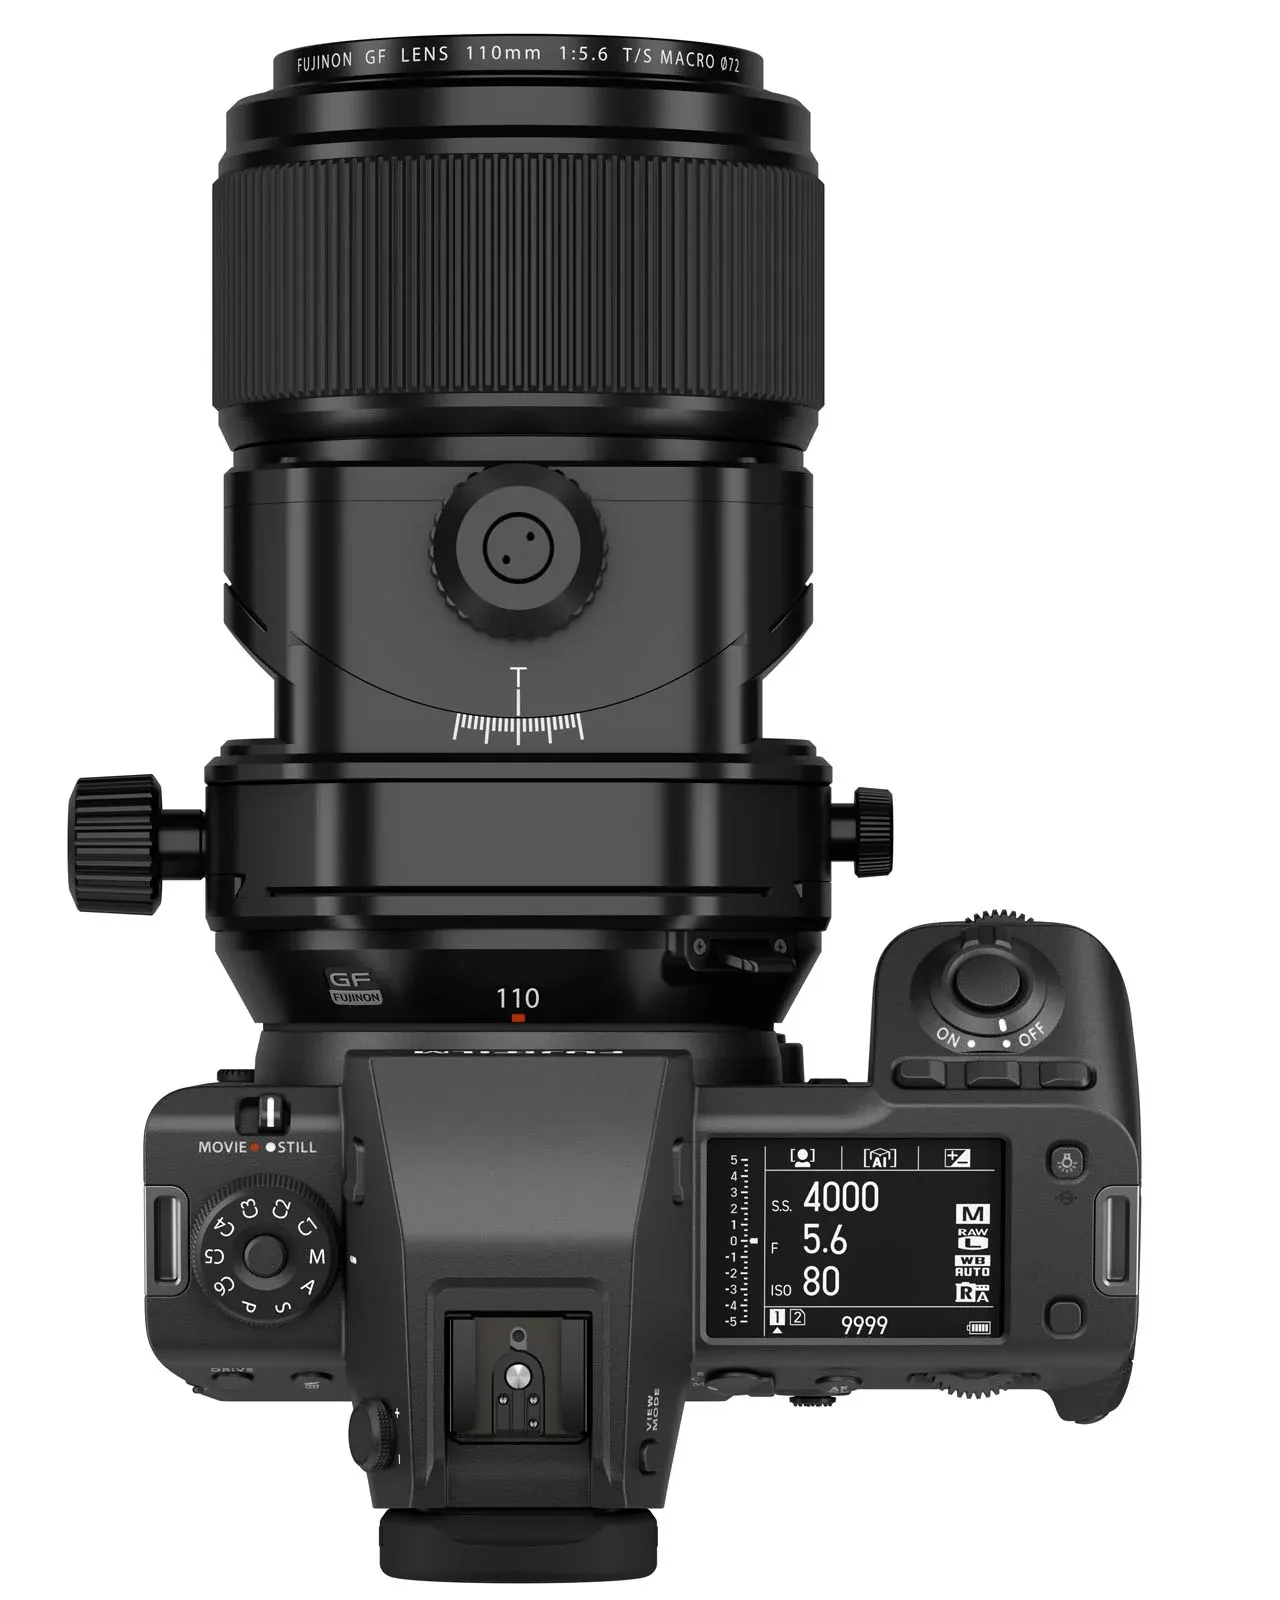 Fujifilm ra mắt ống kính tilt shift GF 30mm F5.6 T/S và GF 110mm F5.6 T/S Macro